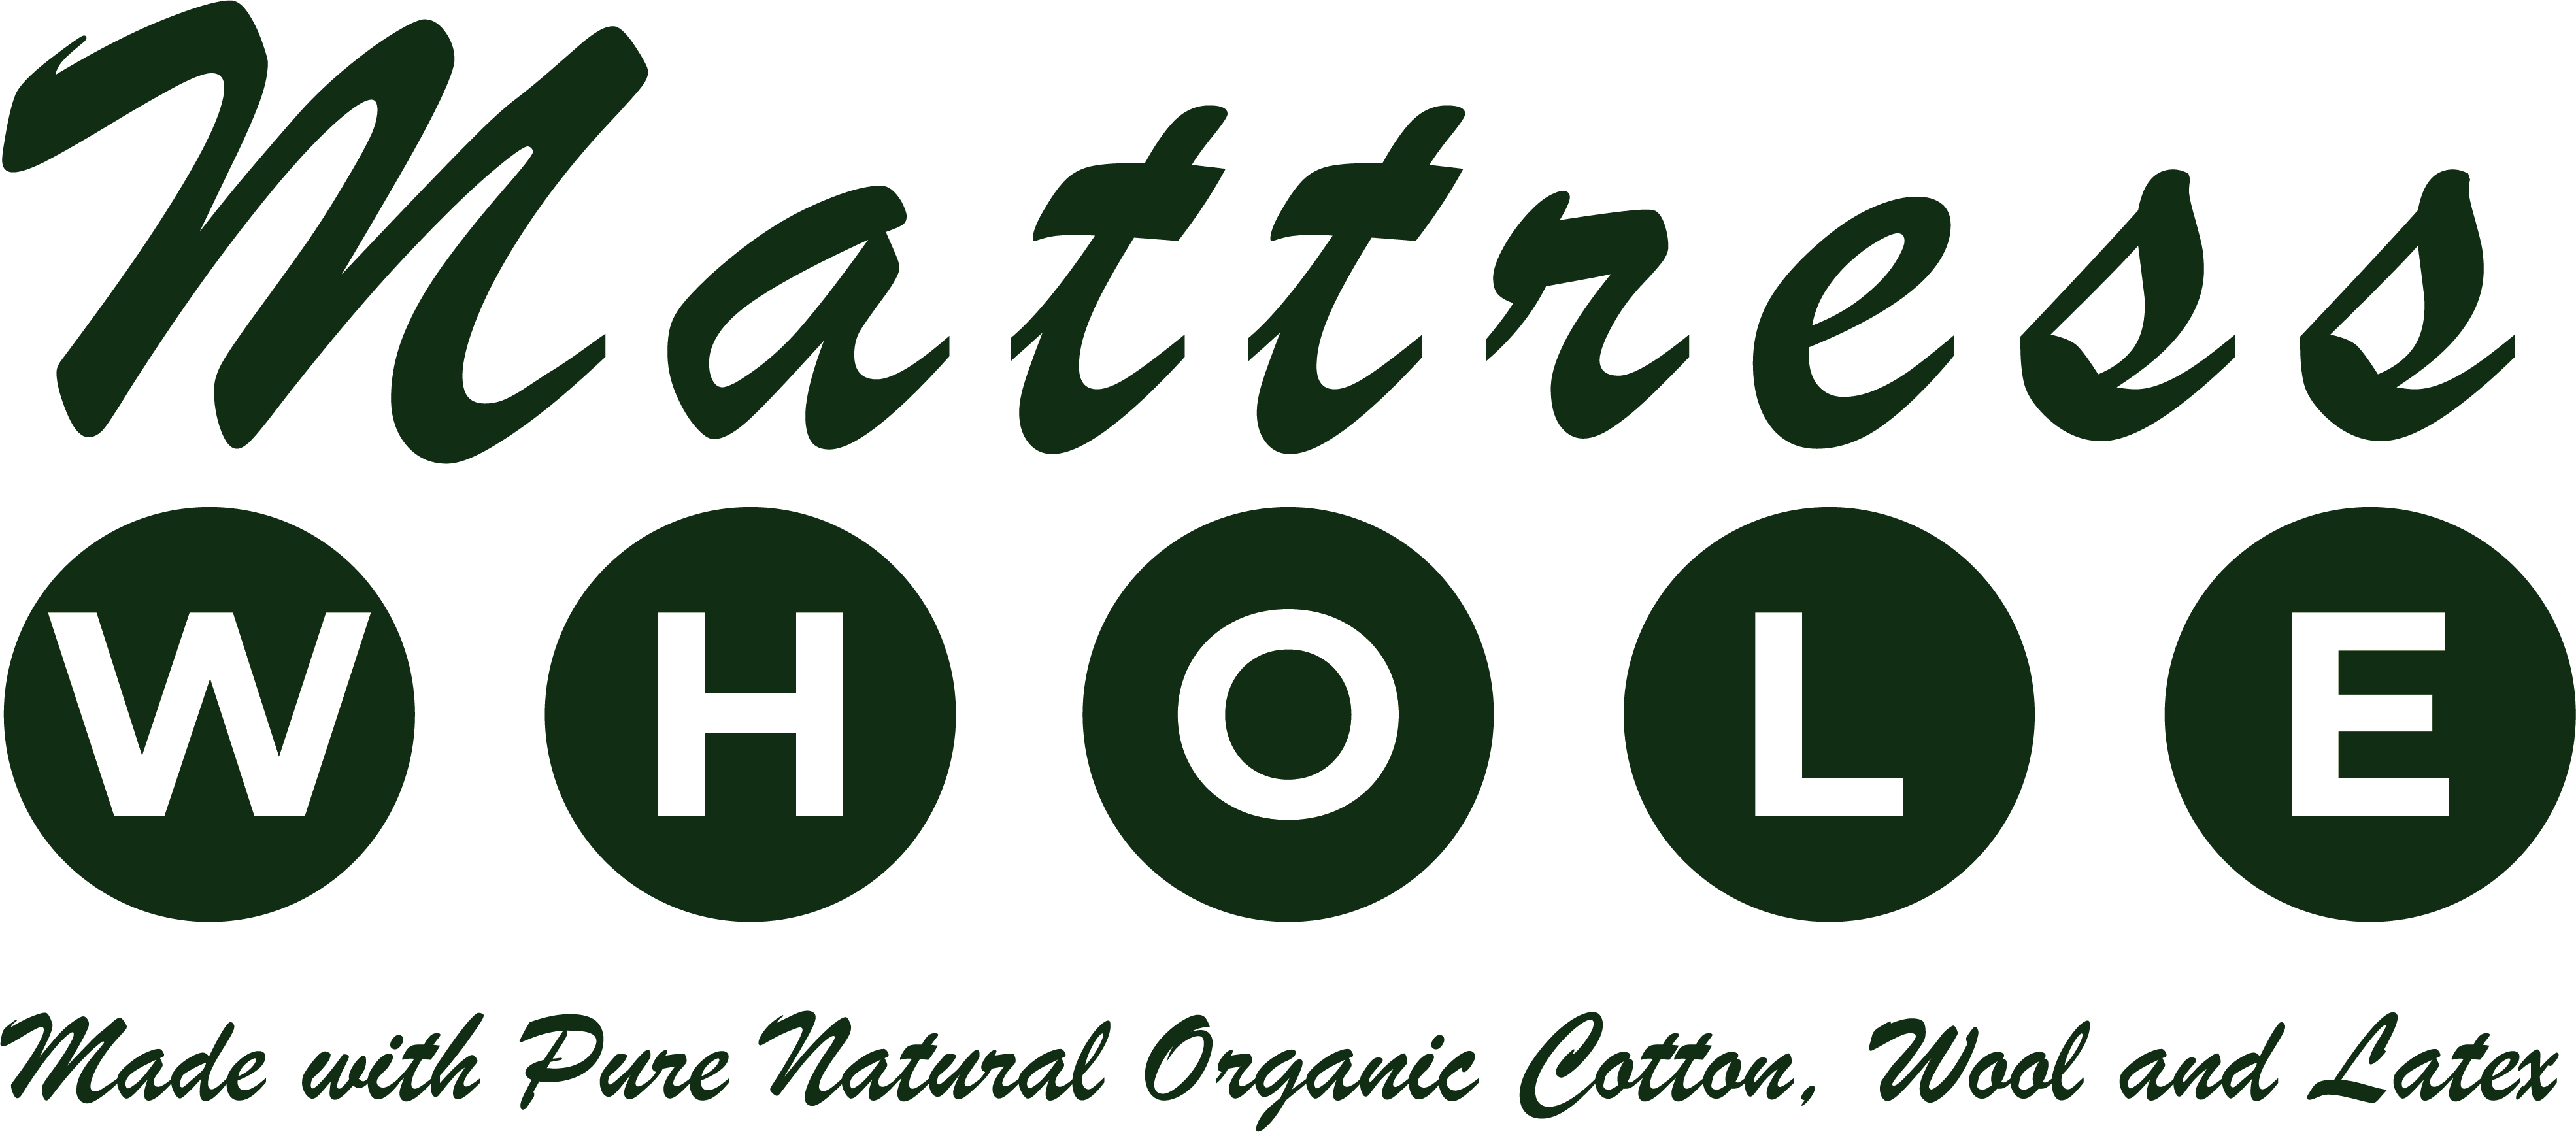 Whole Mattress GOLS GOTS Certified Latex wool cotton